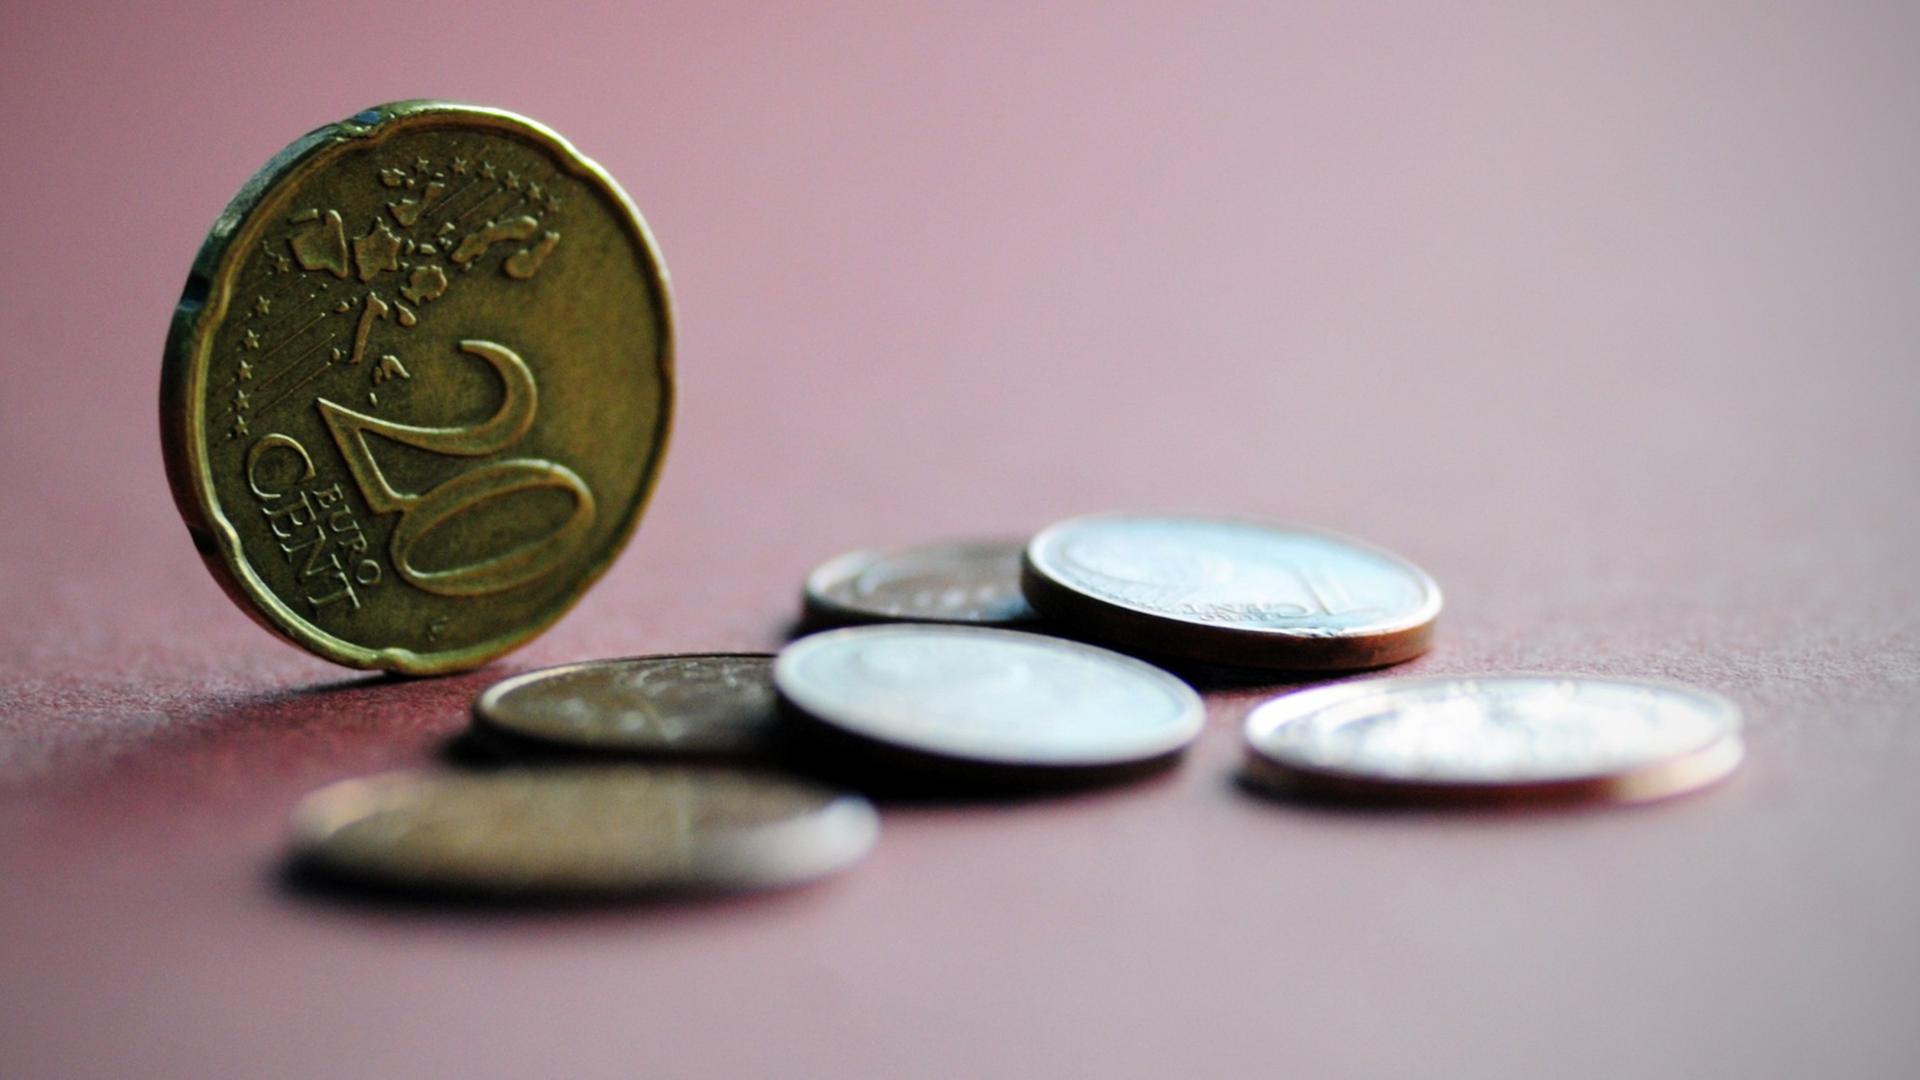 Mehrere Euro-Münzen liegen auf einem farbigen Papier, eine 20-Cent-Münze steht aufrecht